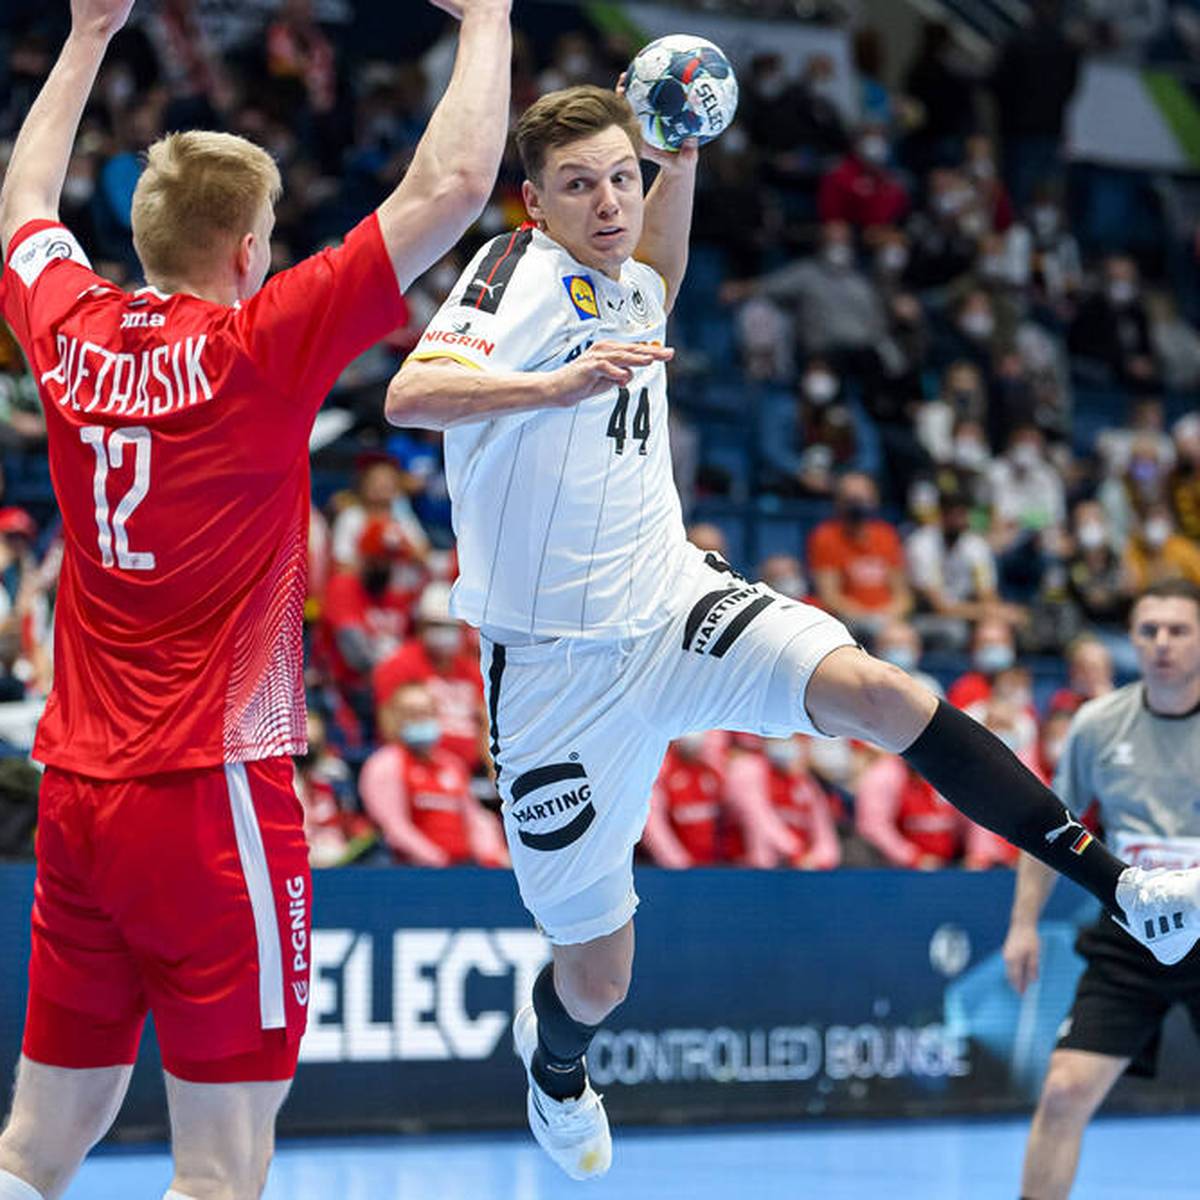 Die DHB-Auswahl hat bei der Handball-EM weitere Corona-Fälle zu beklagen. Damit werden die Sorgen vor dem Hauptrundenauftakt gegen Spanien immer größer.